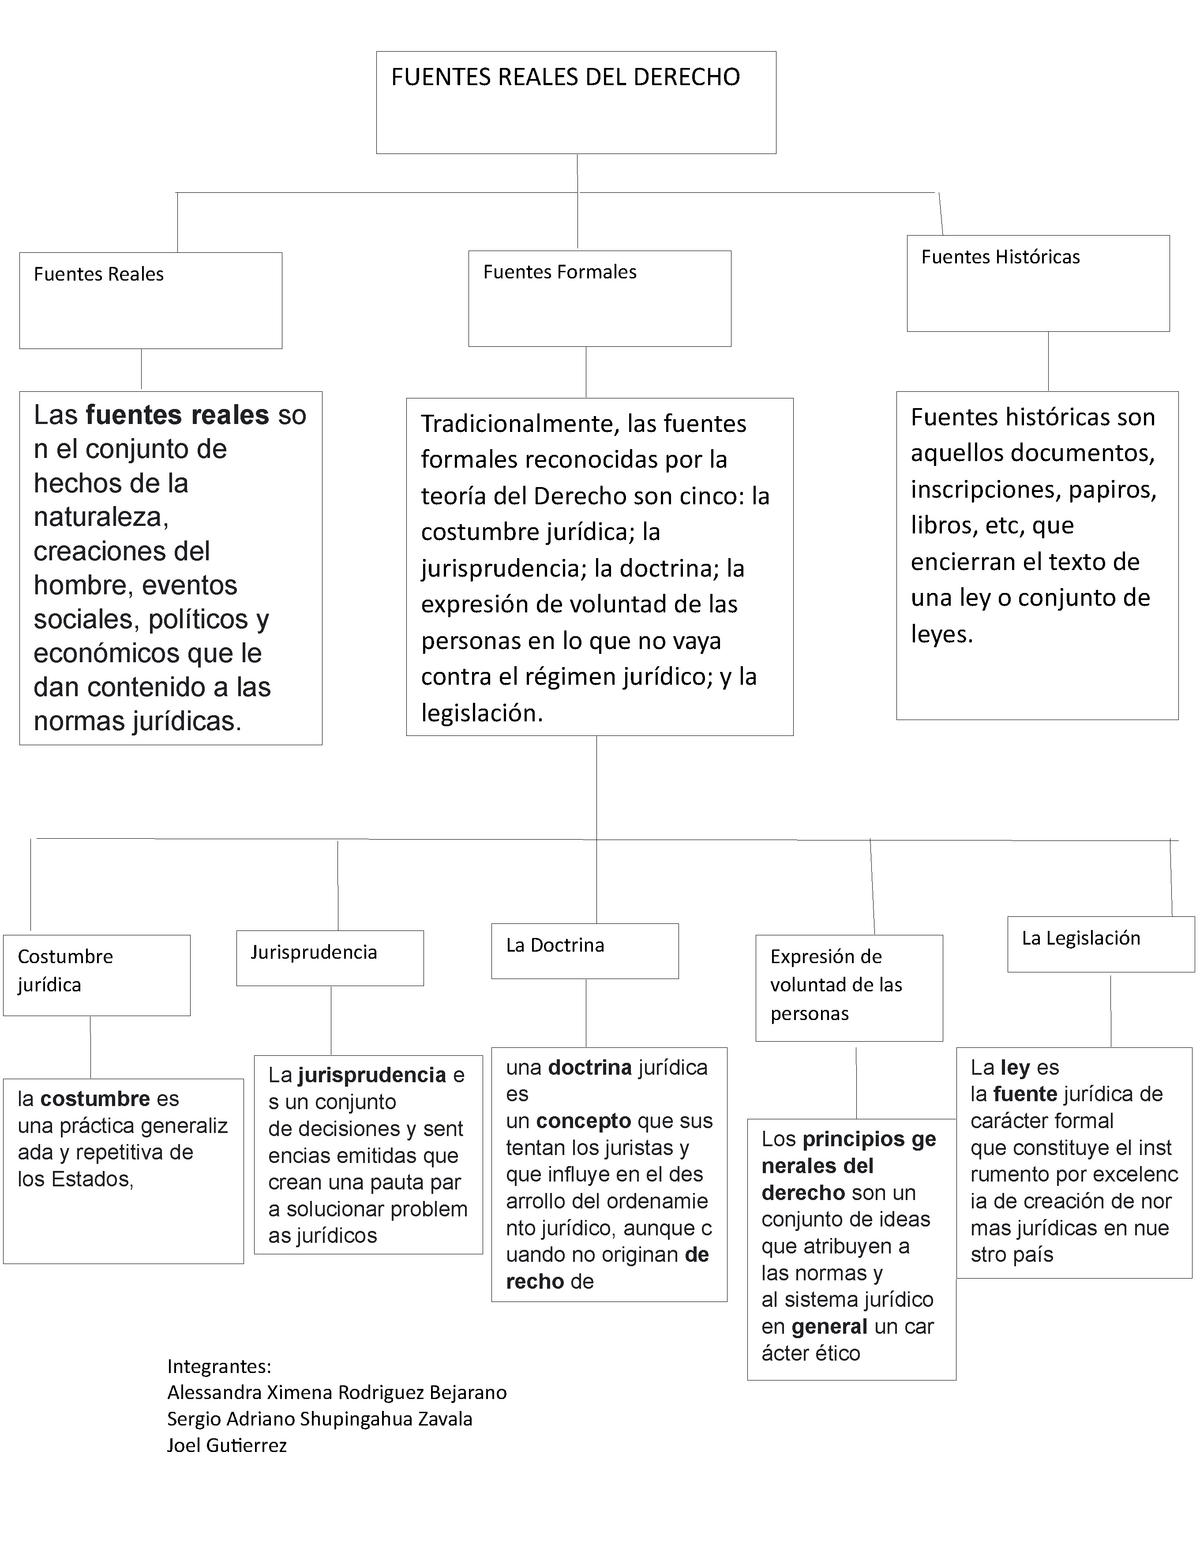 Mapa Conceptual Fuentes Reales Del Derecho Integrantes Alessandra